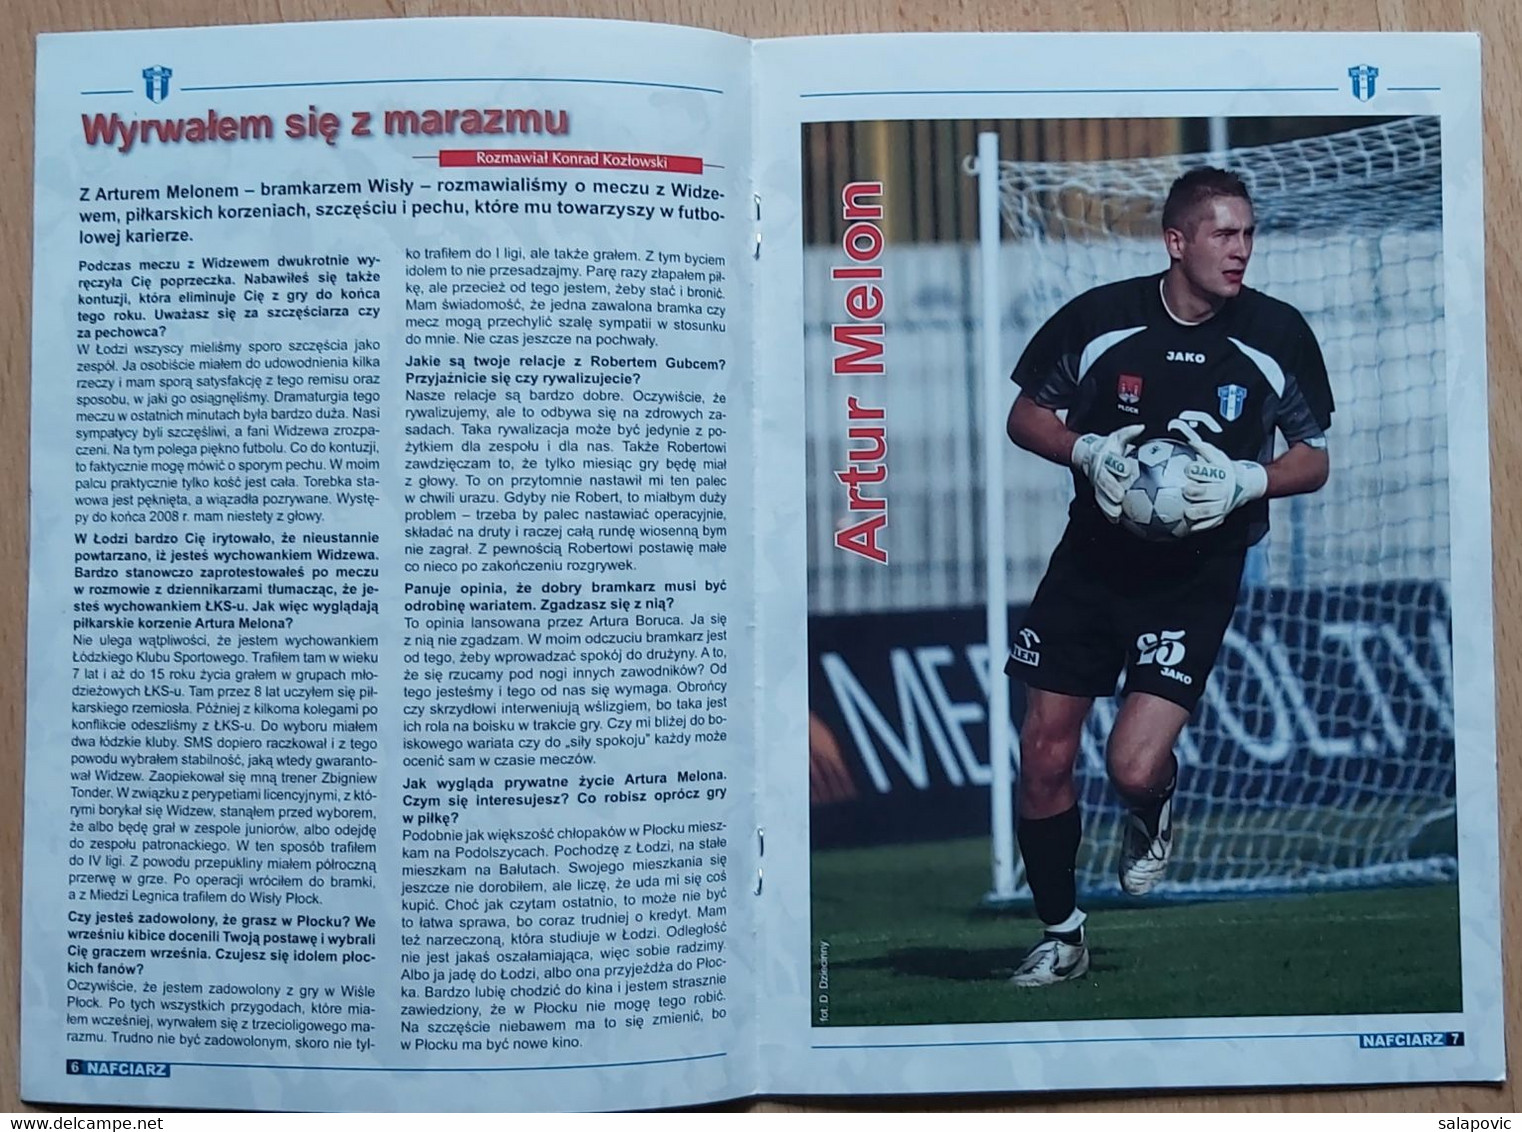 Nafciarz (oficjalna Gazeta Wisły Płock) Nr 22 - The Official Newspaper Of Wisła Płock Wiosna 2008 Football Match Program - Books